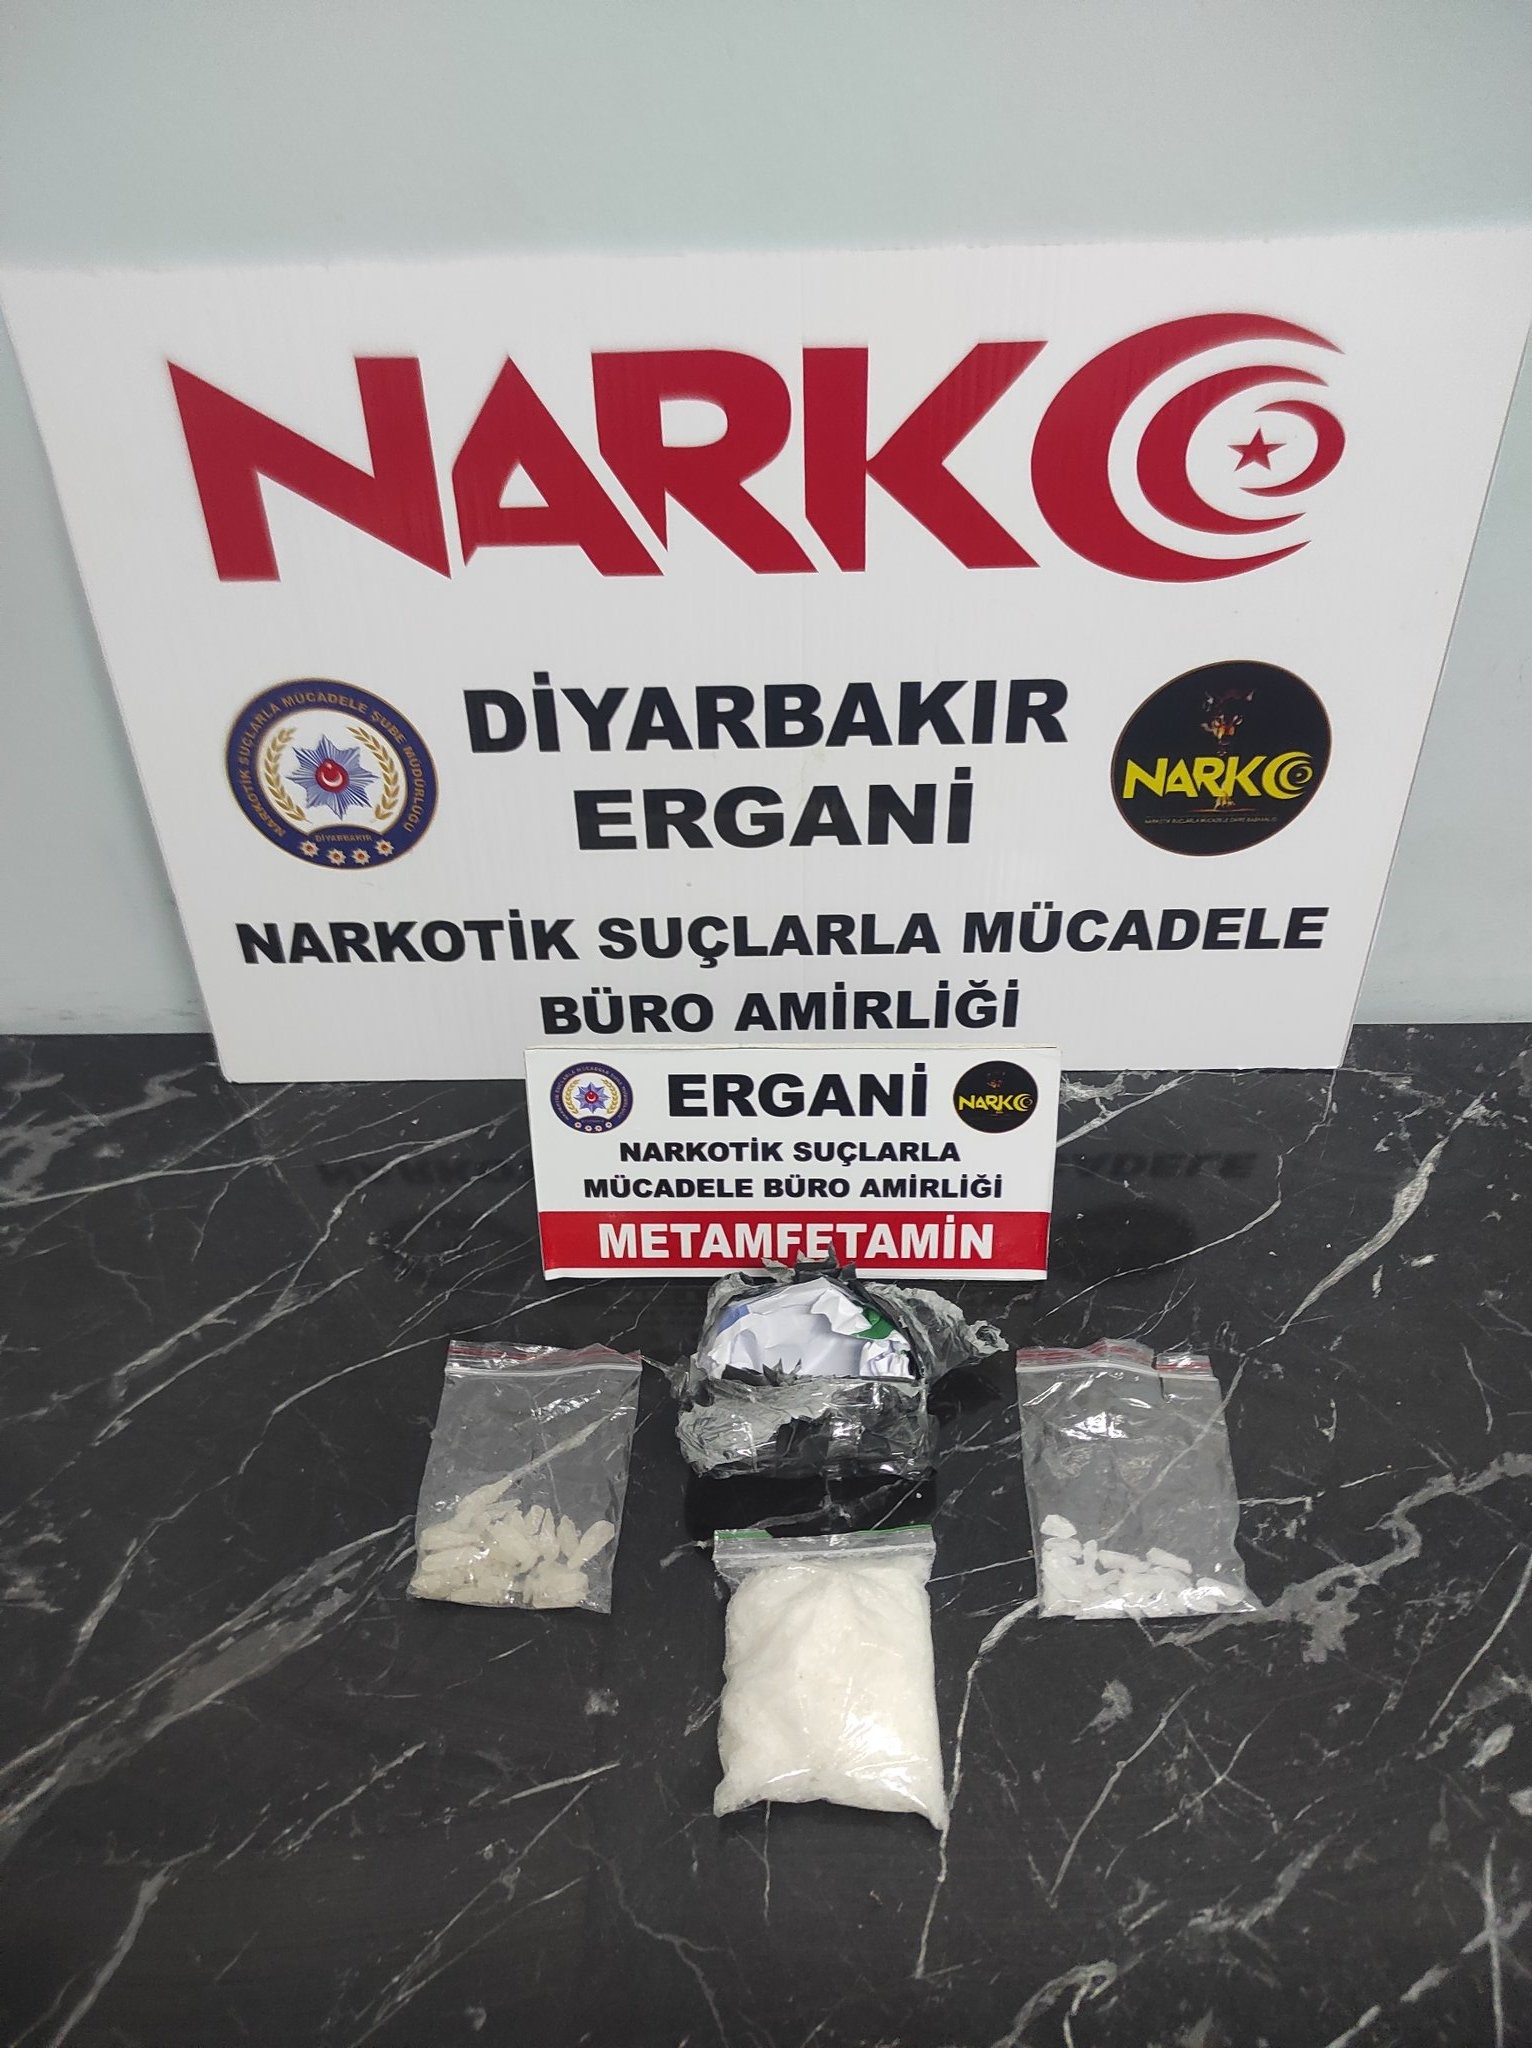 Diyarbakır’da şüpheli şahsın üzerinde uyuşturucu ele geçirildi